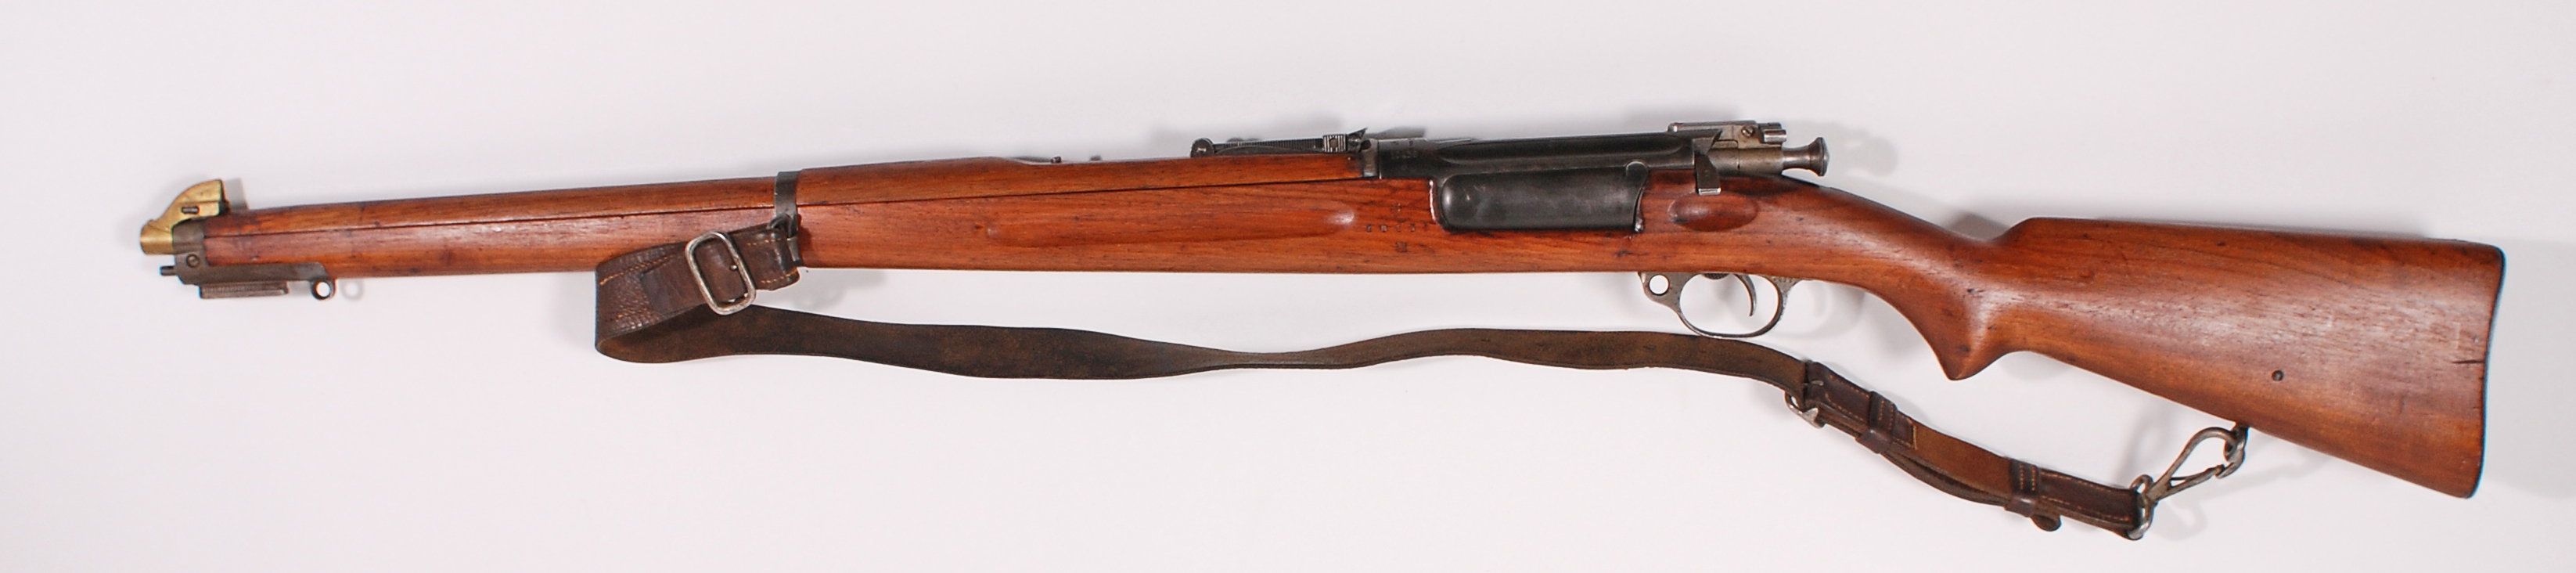 ./guns/rifle/bilder/Rifle-Kongsberg-Krag-M1912-10438-2.jpg